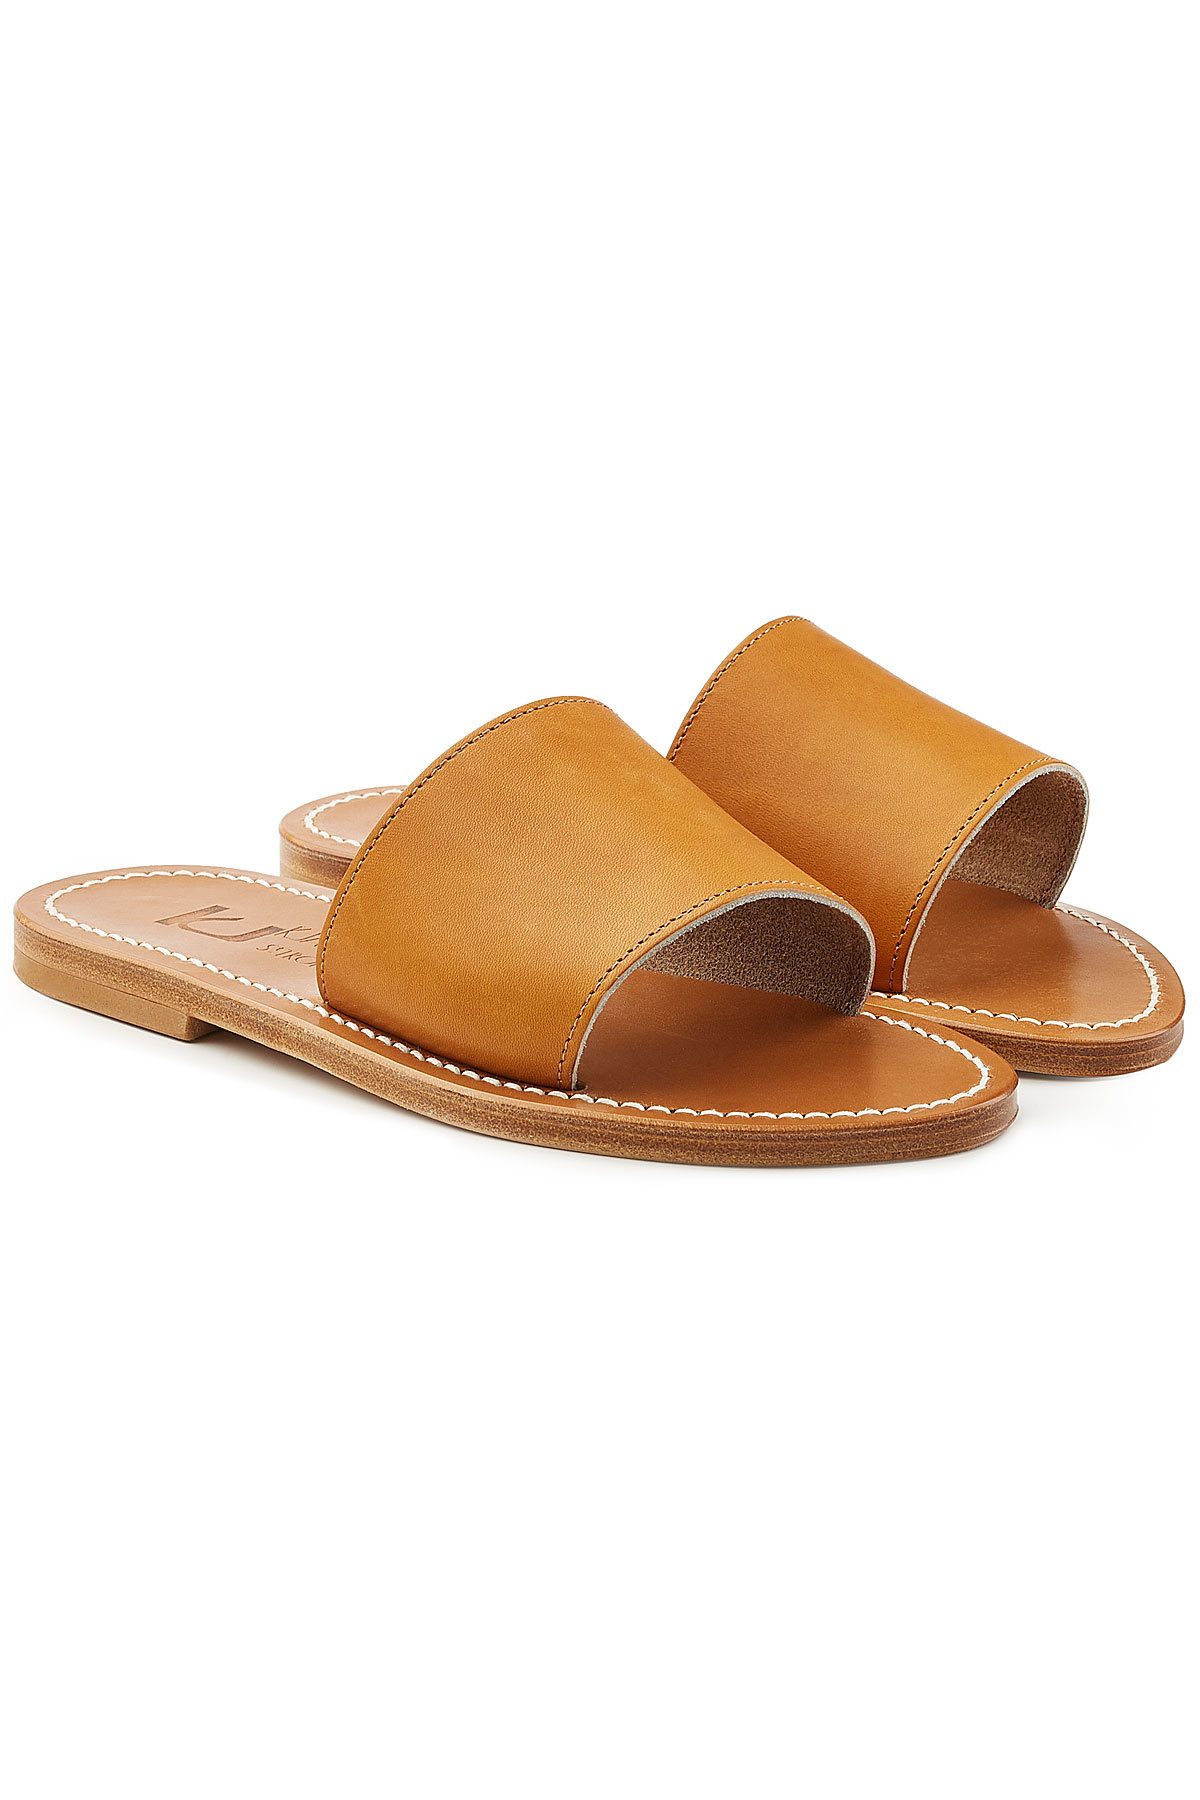 K.Jacques - Capri Leather Sandals